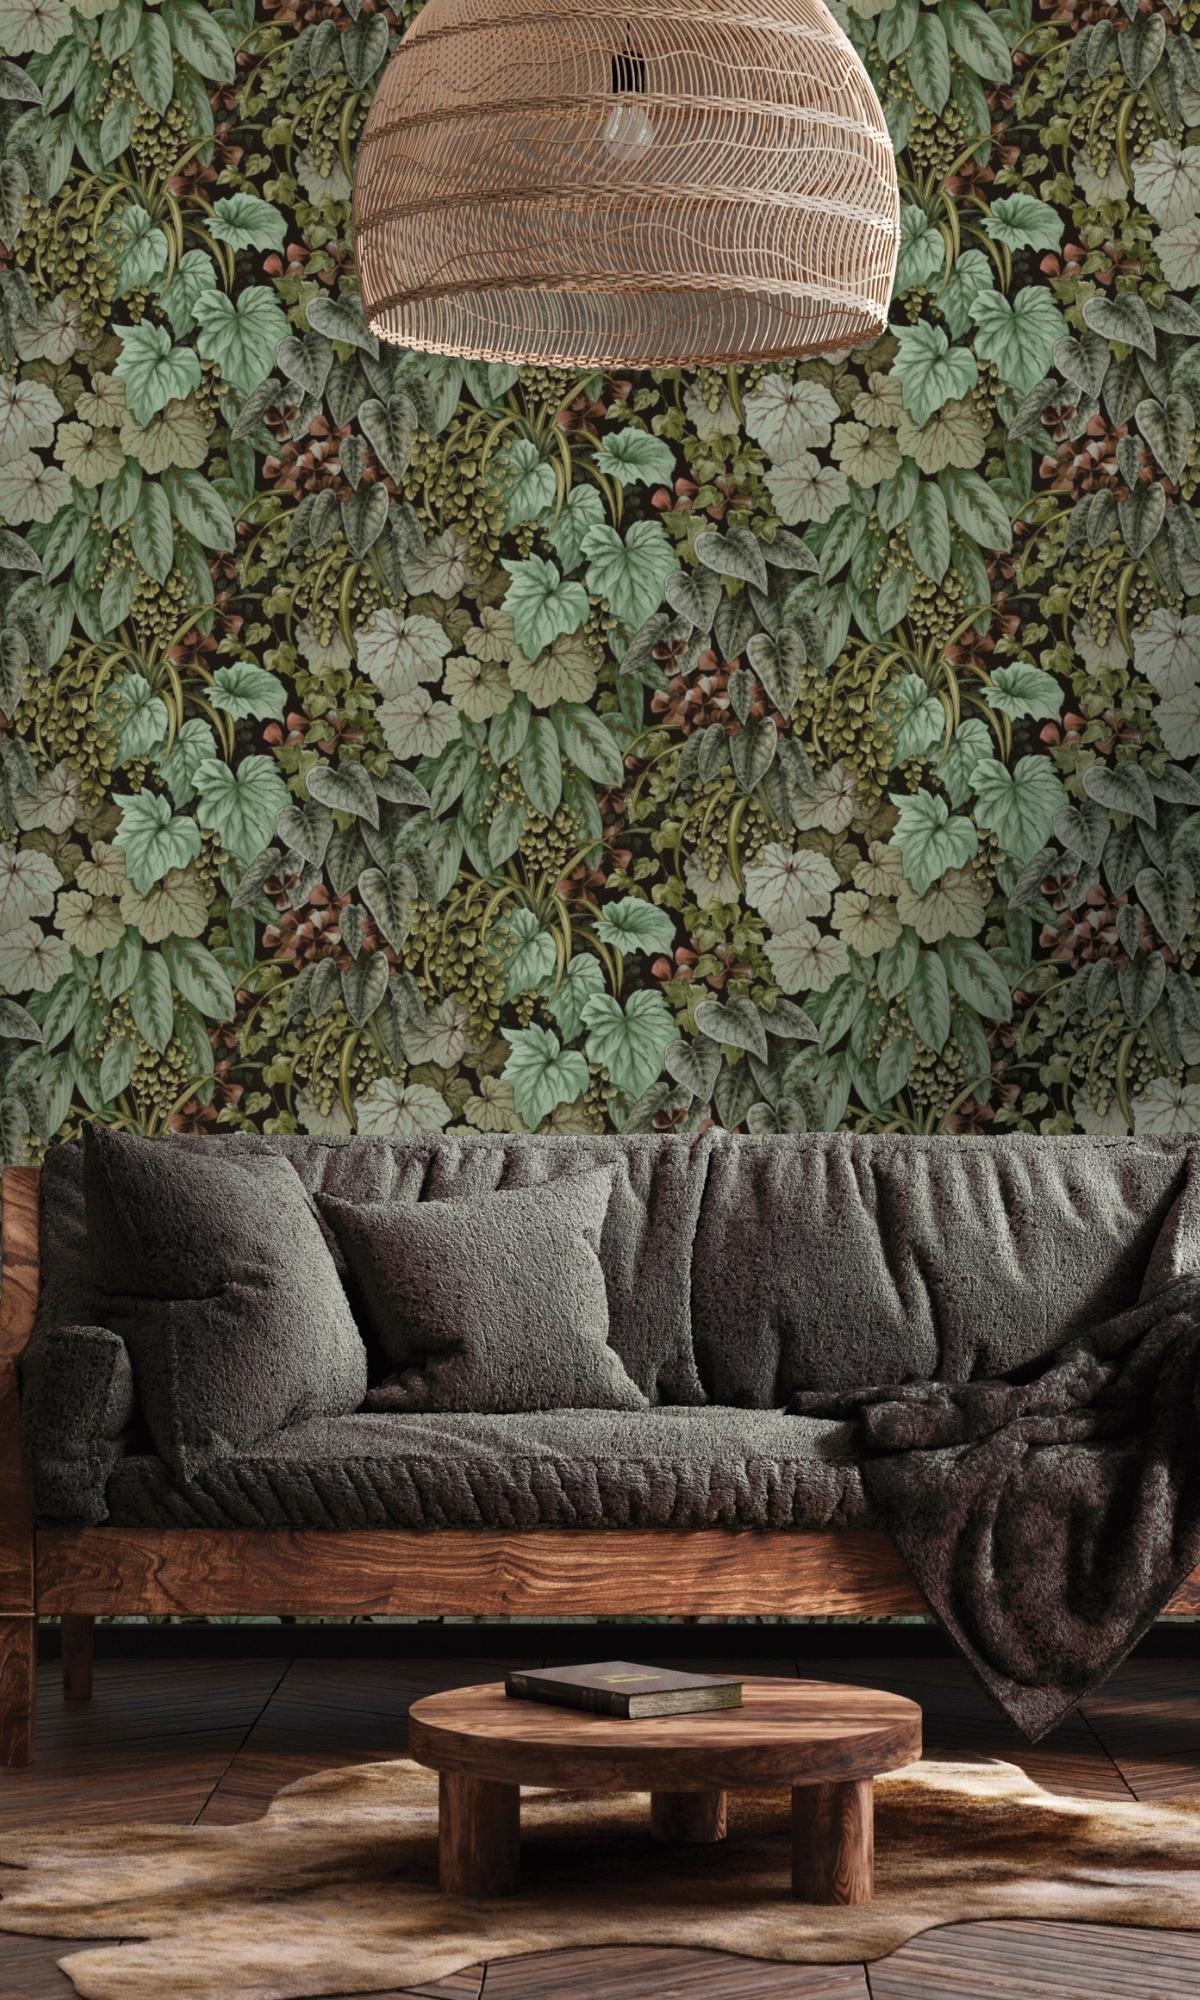 Green living walls wallpaper